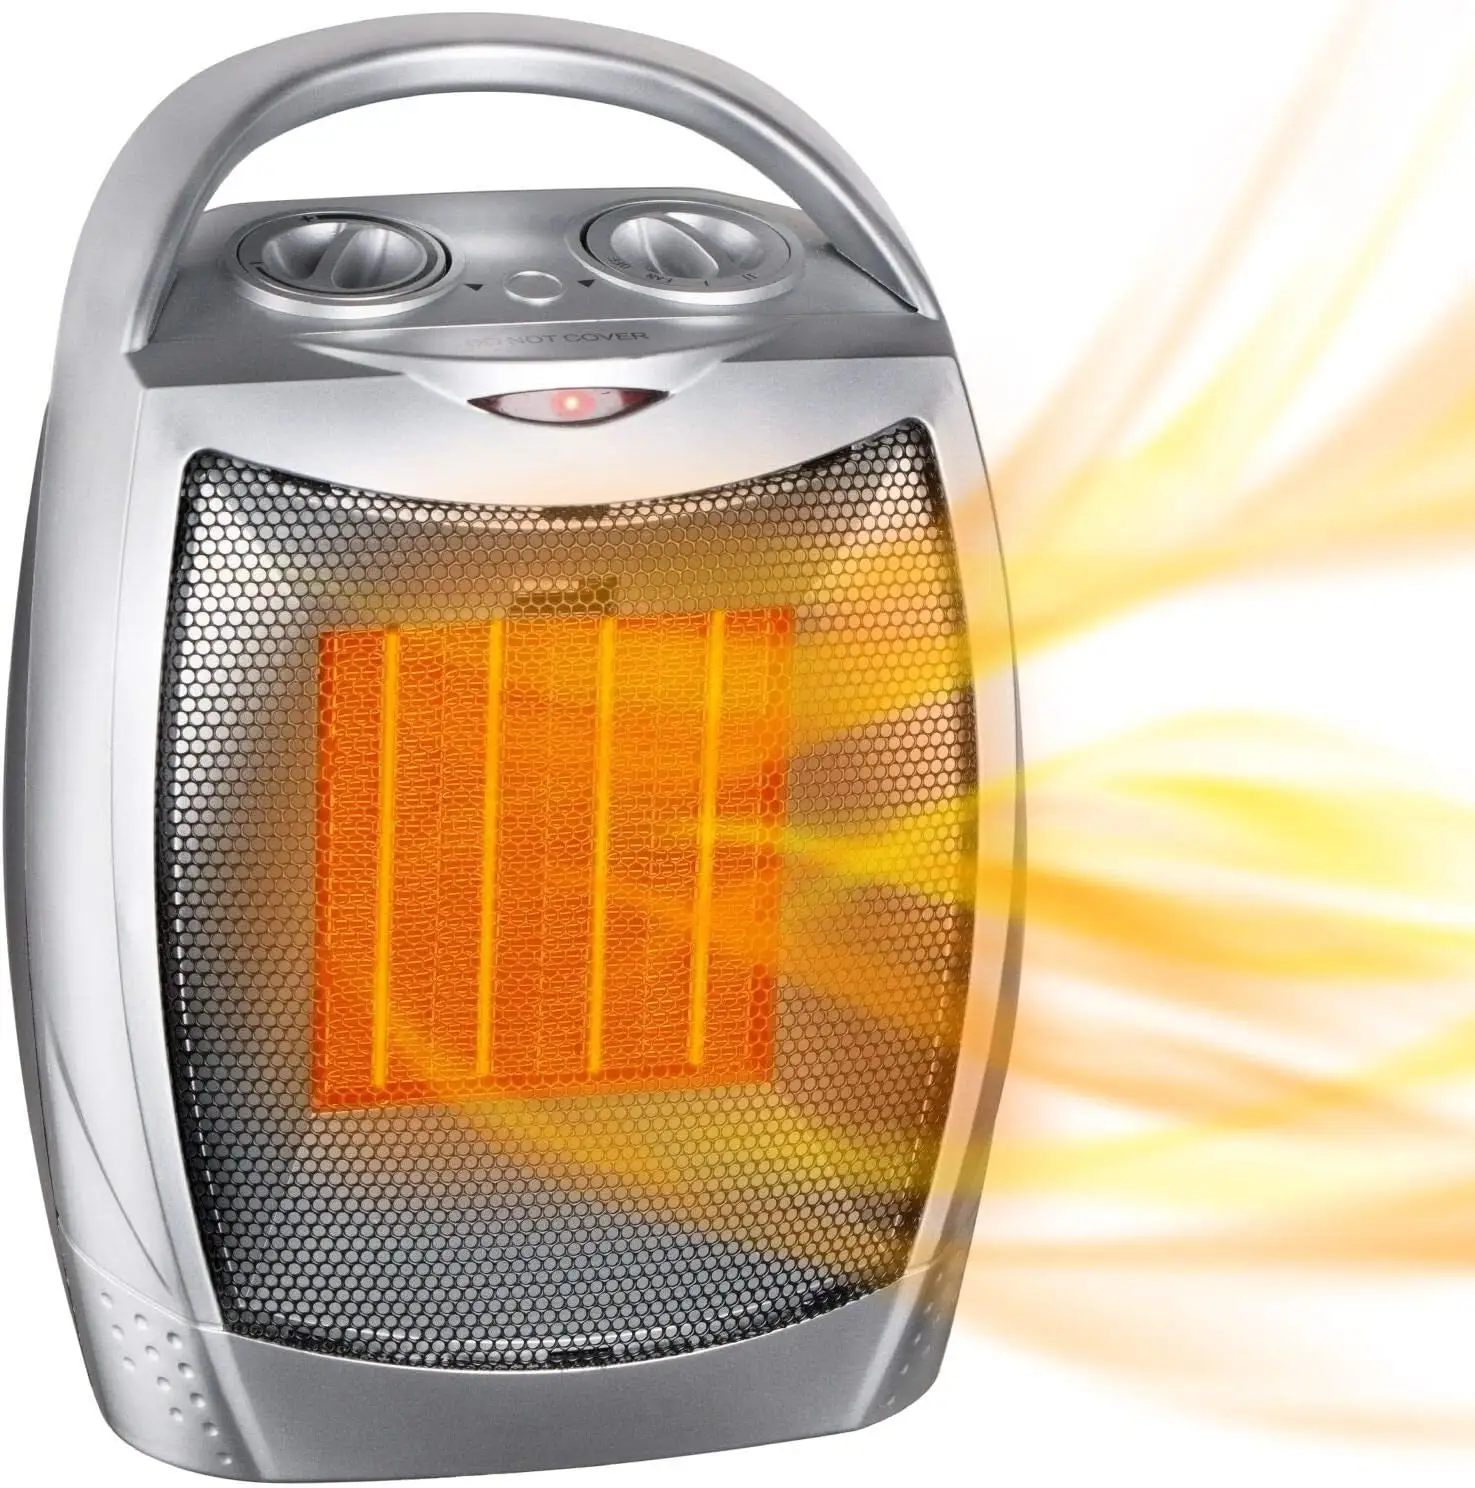 Termostat ile toptan taşınabilir elektrikli ısıtıcı satın, 1500W/750W güvenli ve sessiz seramik ısıtıcı fanı